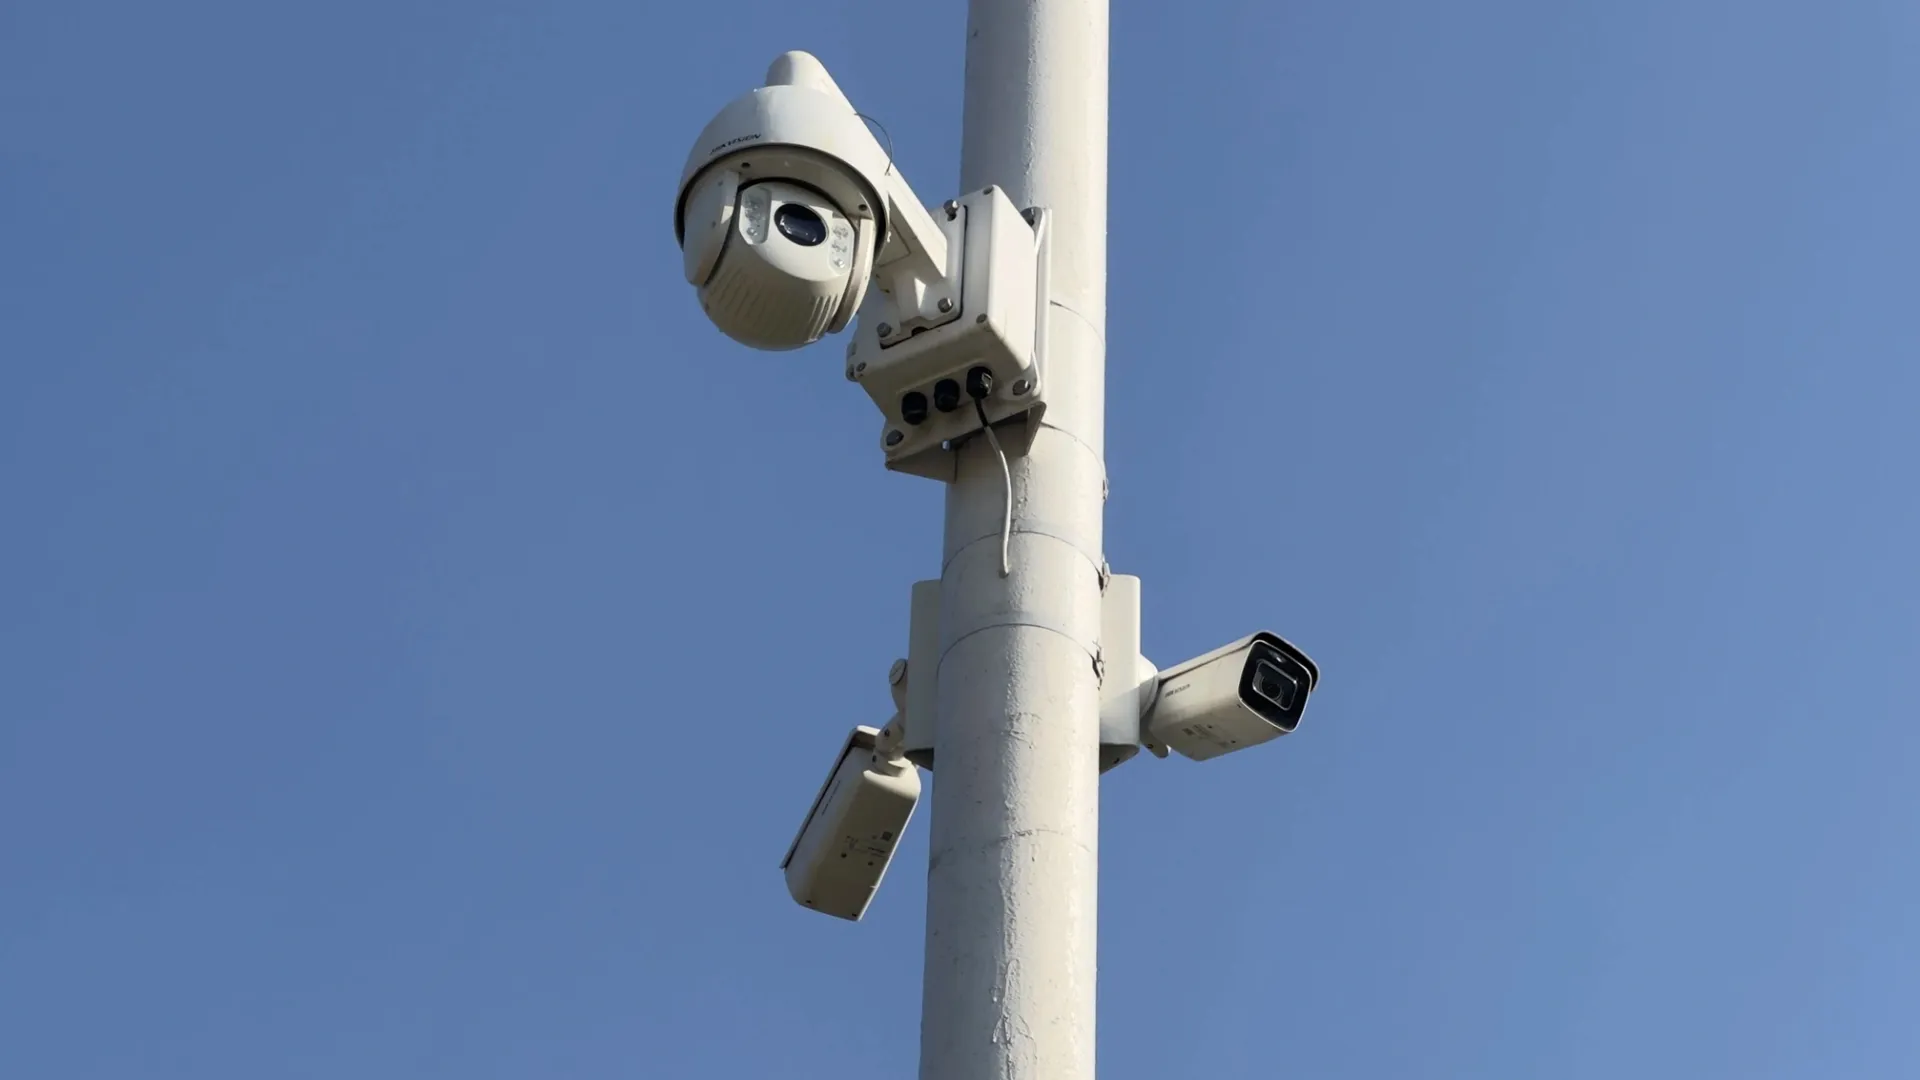 Камеры видеонаблюдения зафиксируют любое нарушение. Фото: Андрей Ткачёв / "Ямал-Медиа"